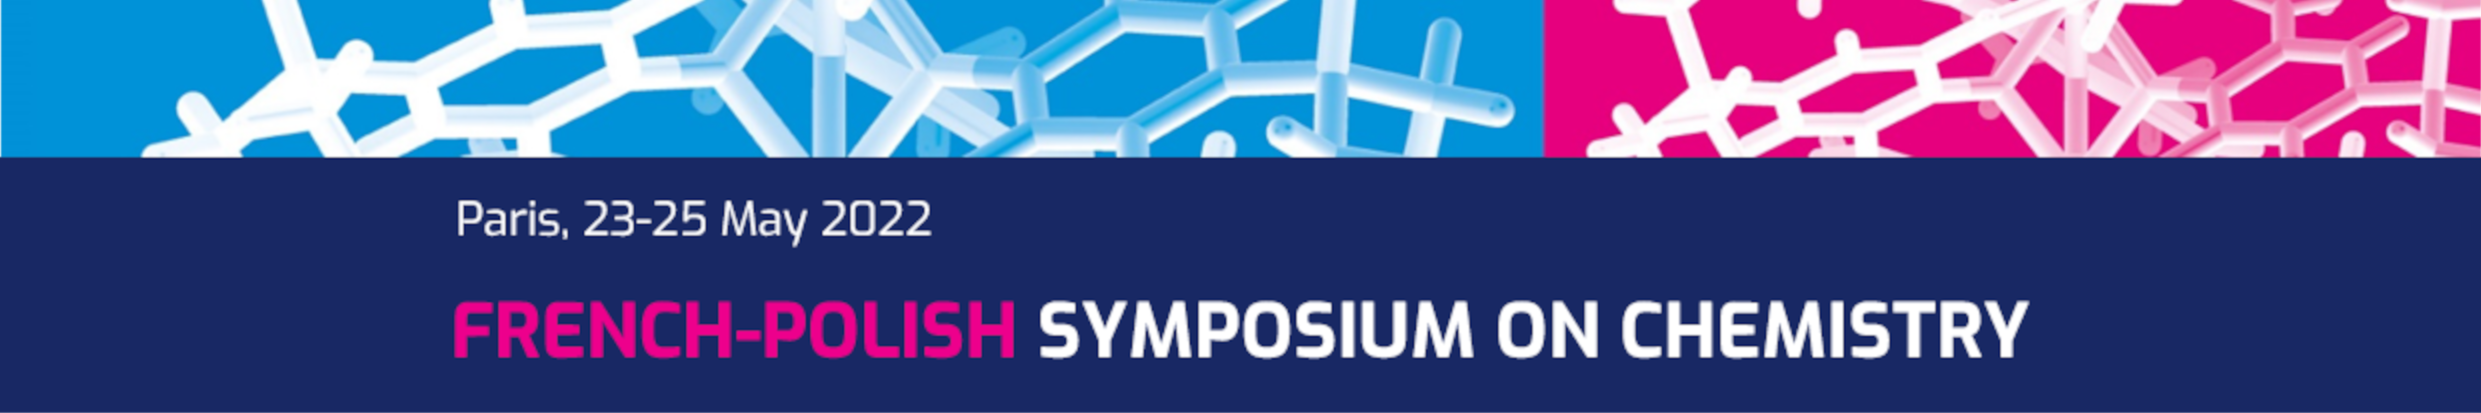 French-Polish Symposium on Chemistry 2022